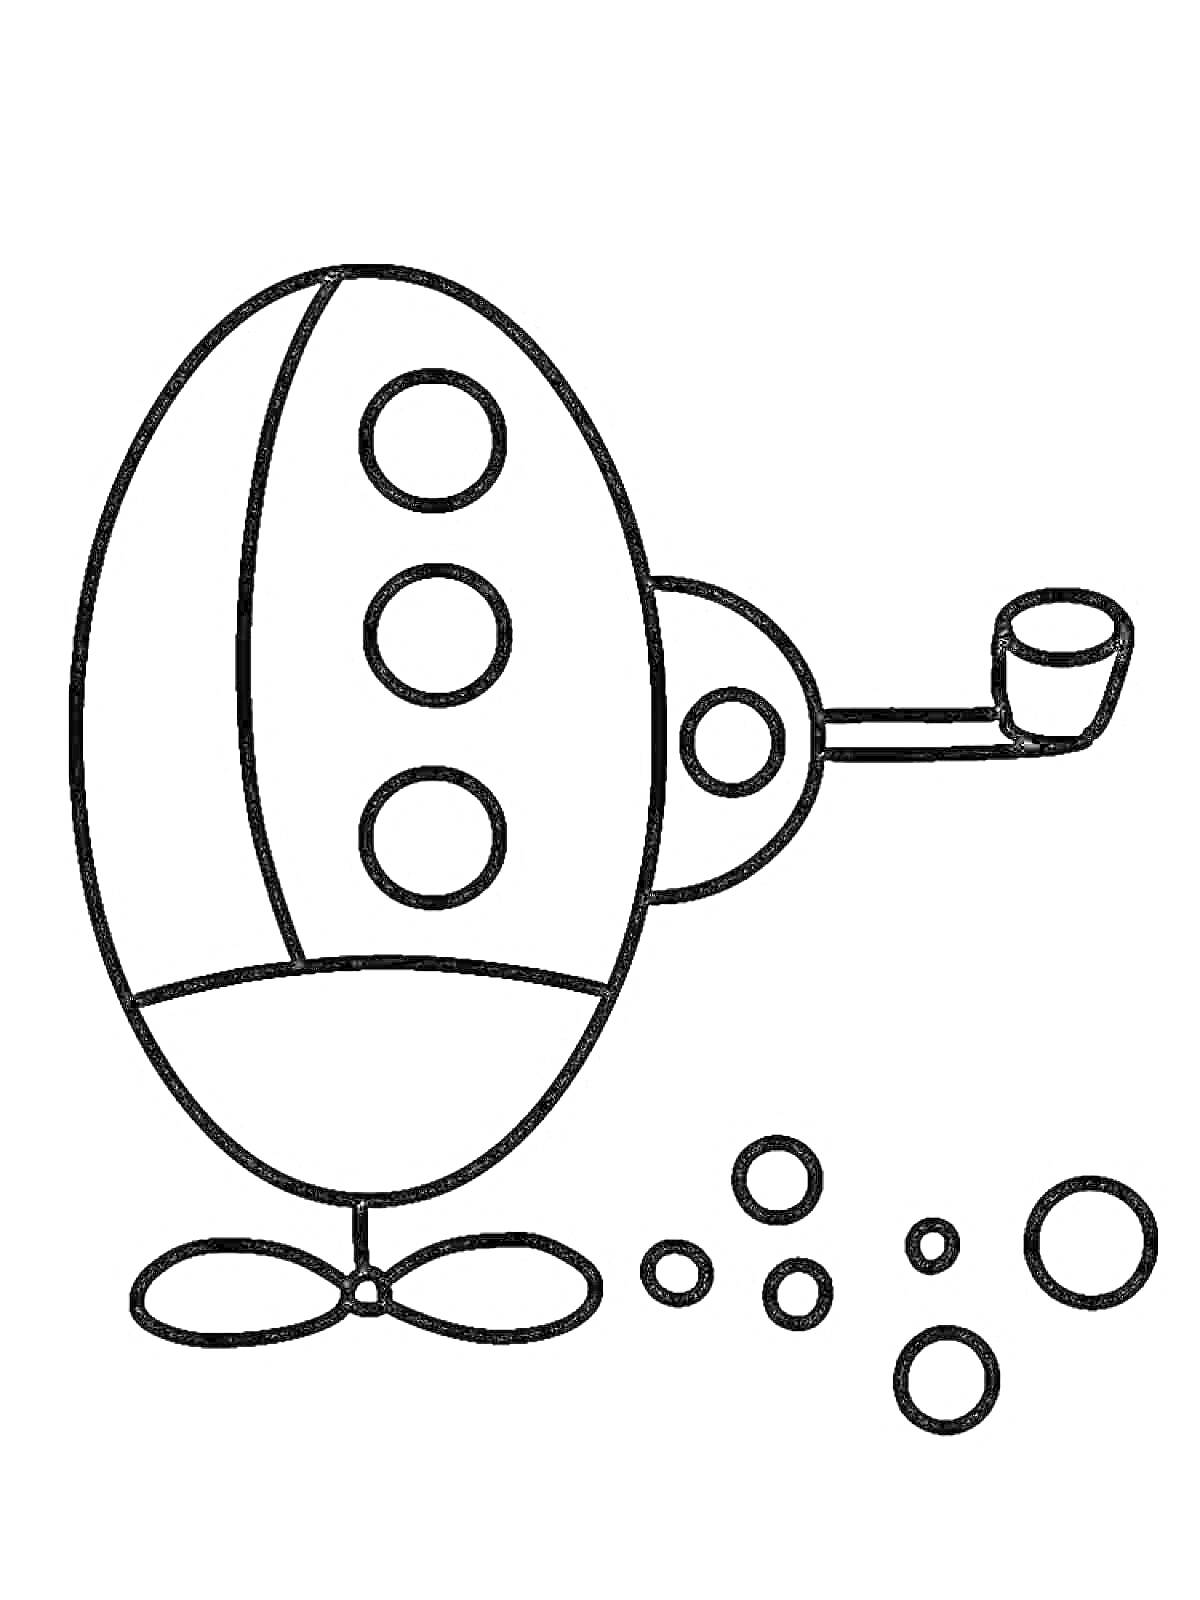 Раскраска Космический корабль с иллюминаторами и антеннами, окруженный пузырями